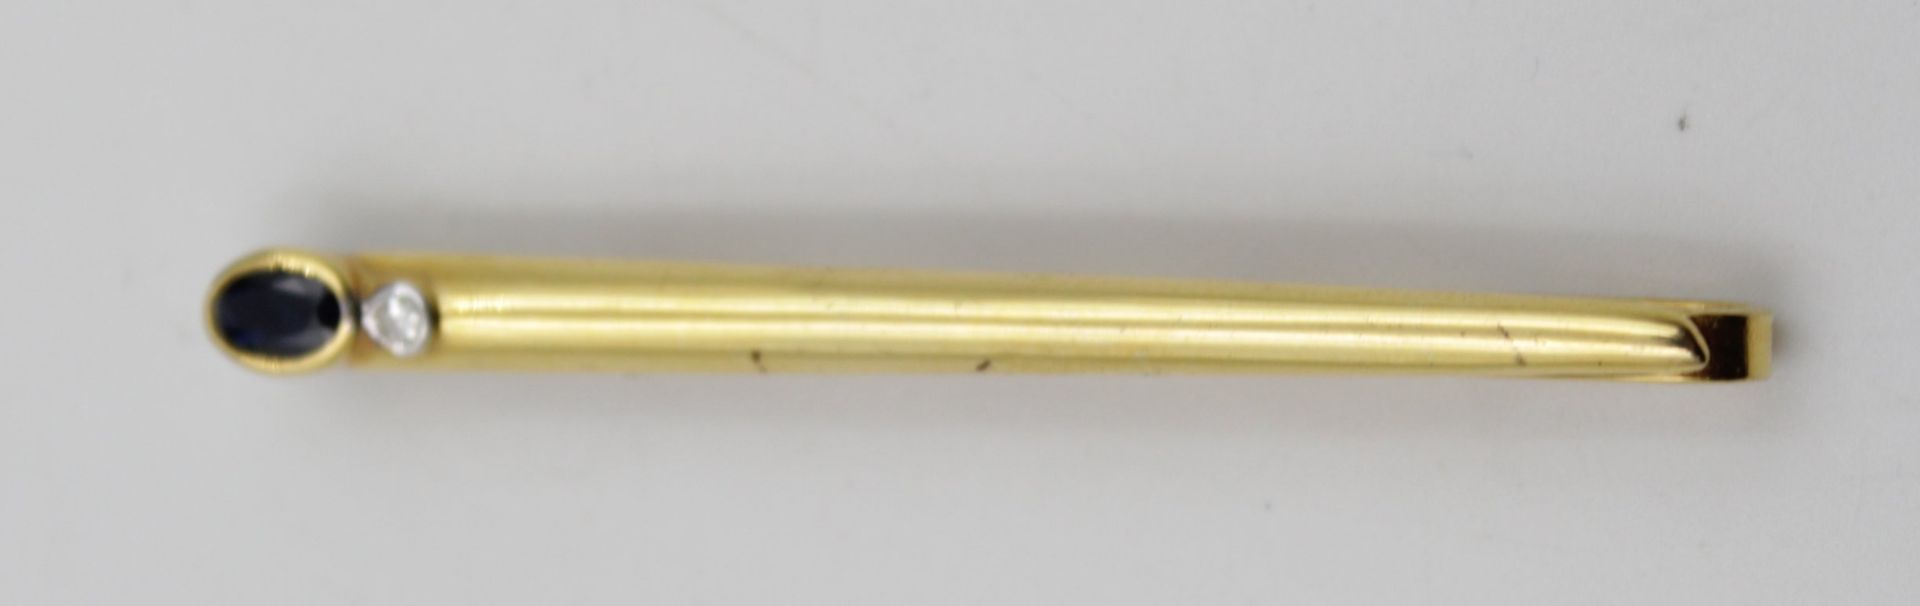 Kravattennadel, GG 333, Brillant und Safir, Klammer Metall, L-6cm. - Bild 4 aus 4